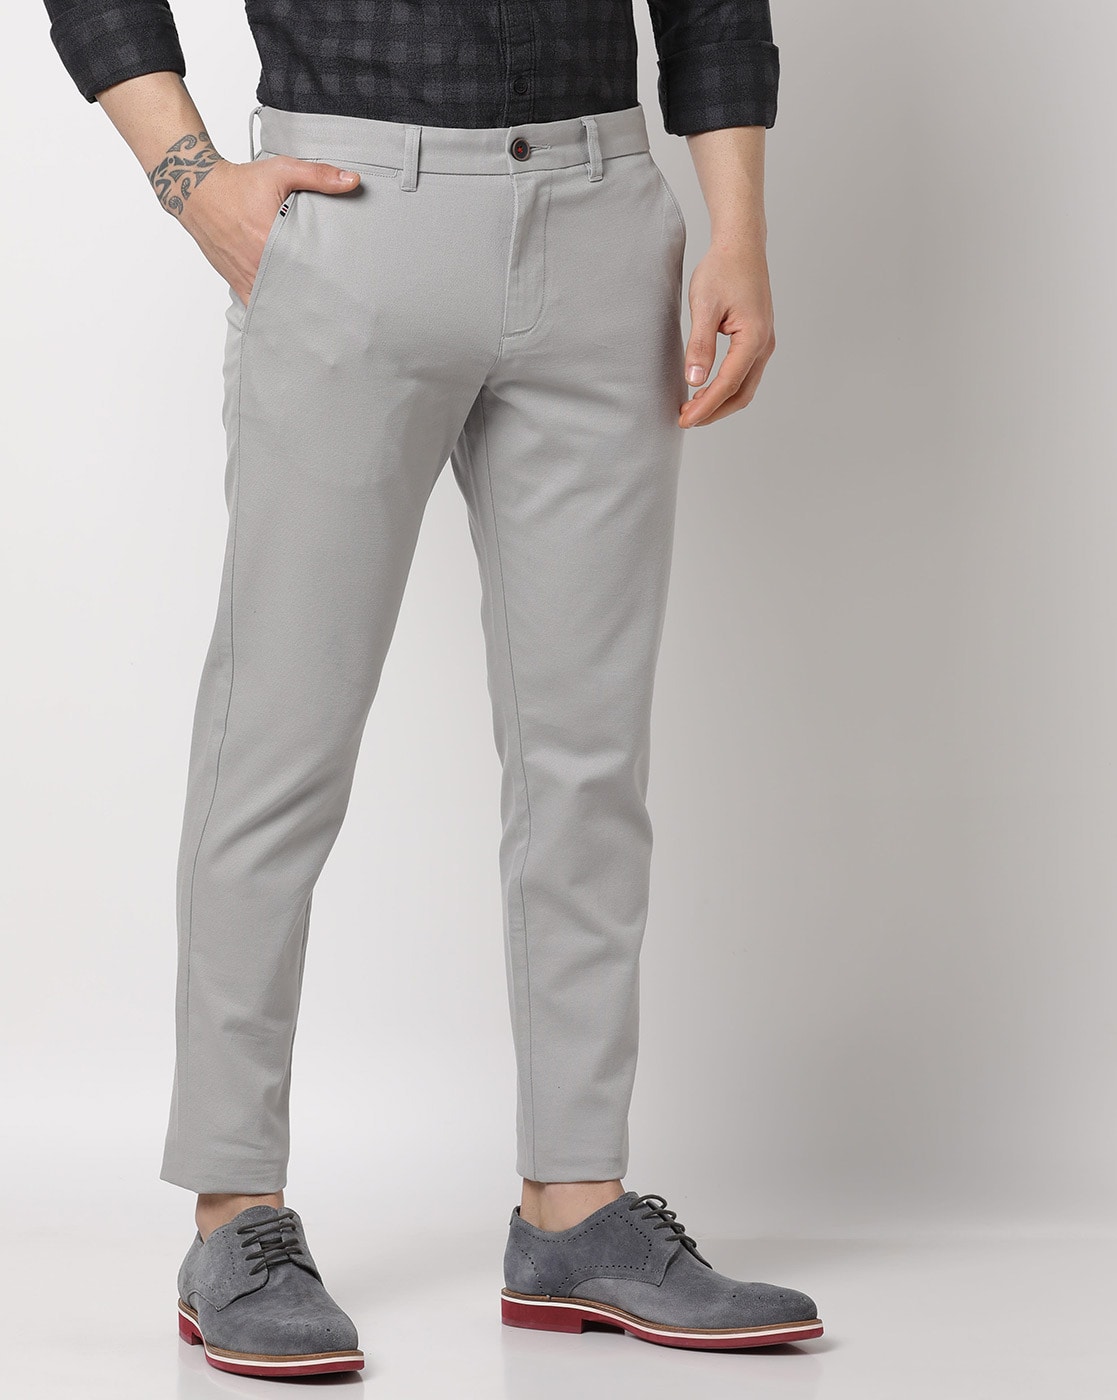 450 Mens Gray Pants ideas  pants grey pants mens outfits